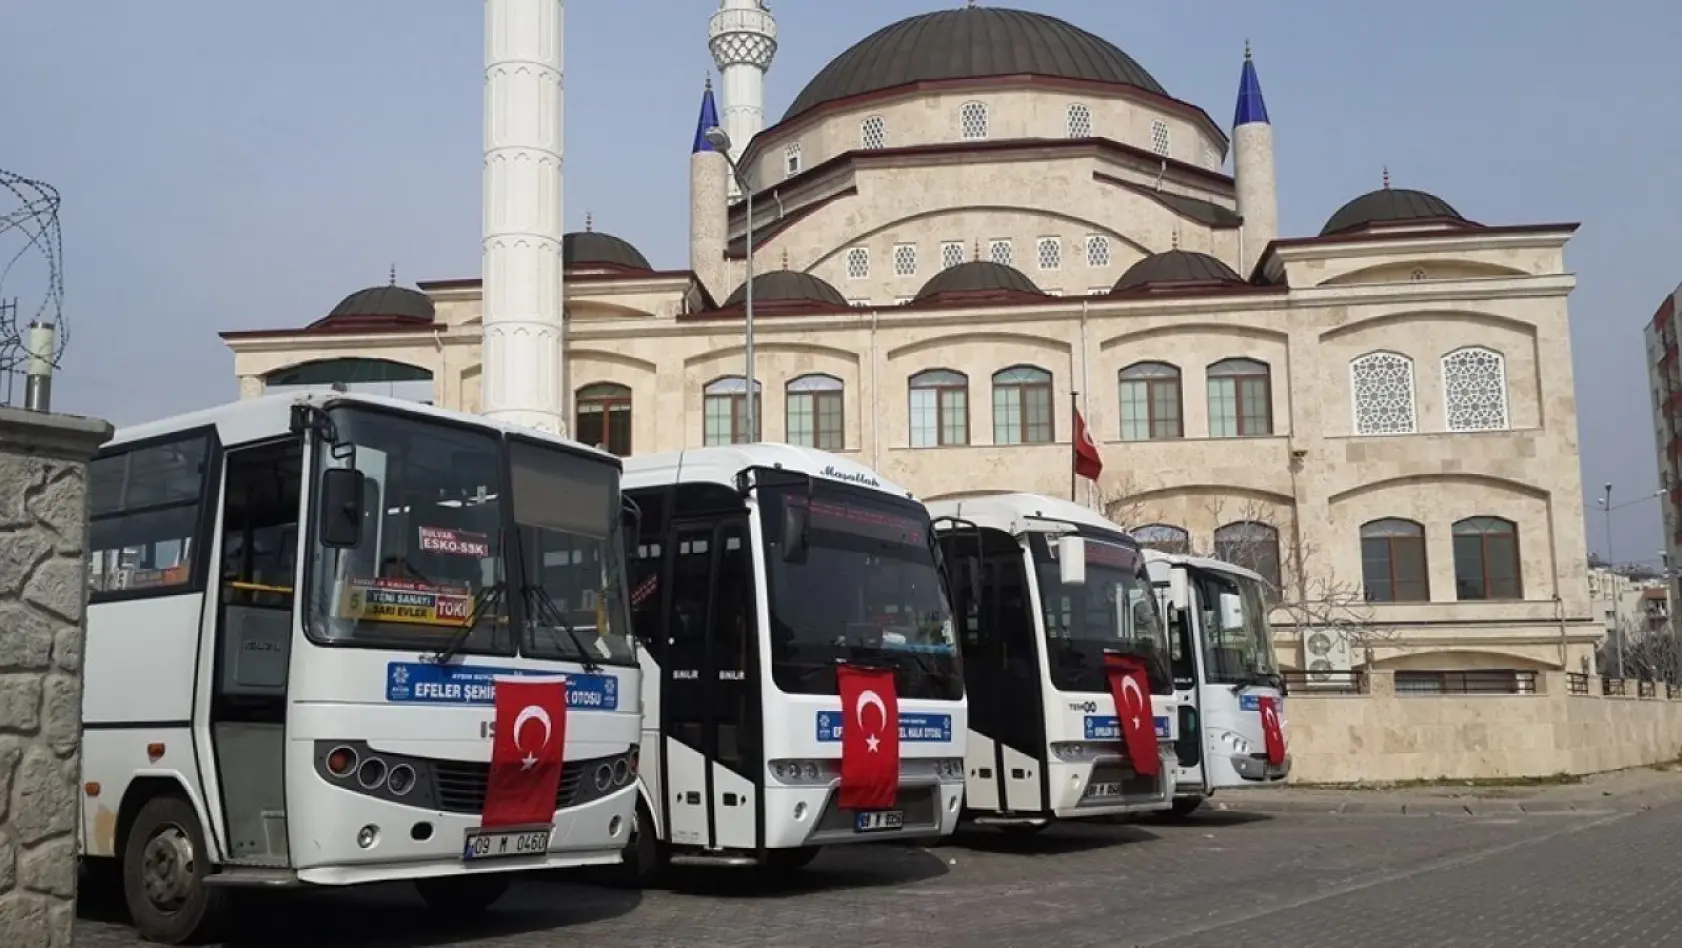 Aydın'da 1 yılda 2 milyon ücretsiz seyahat desteği verildi